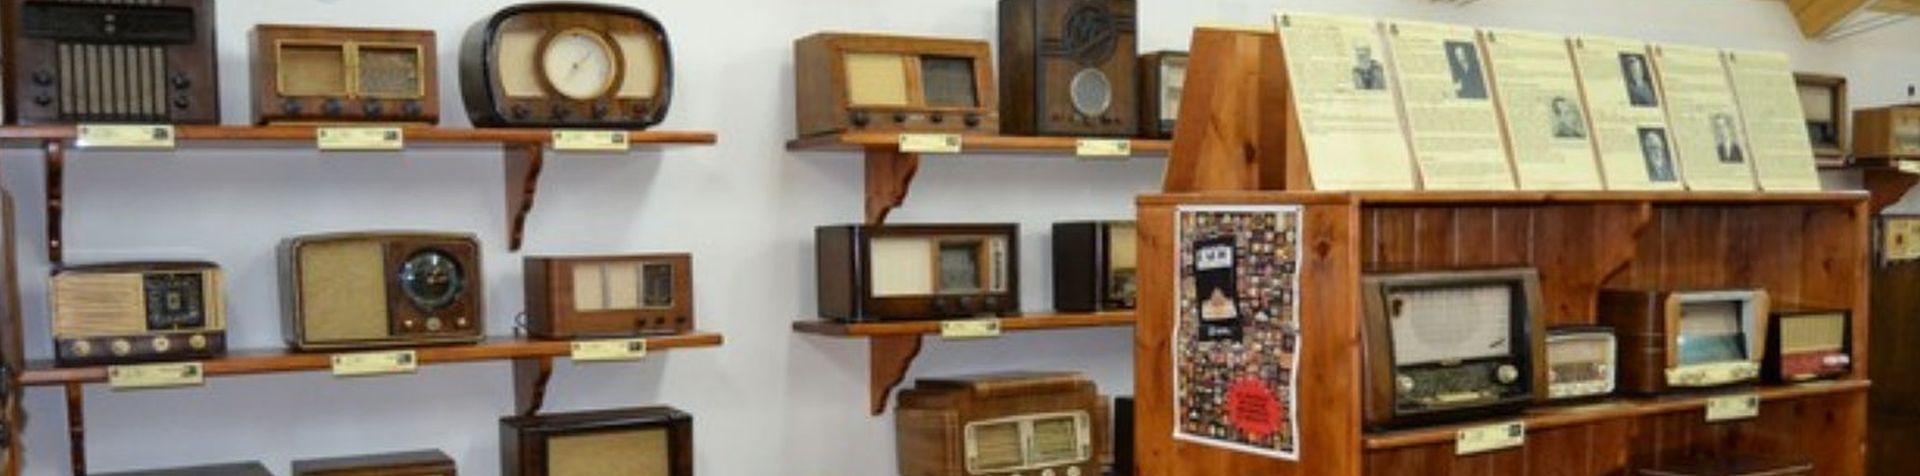 Museo de la Radio